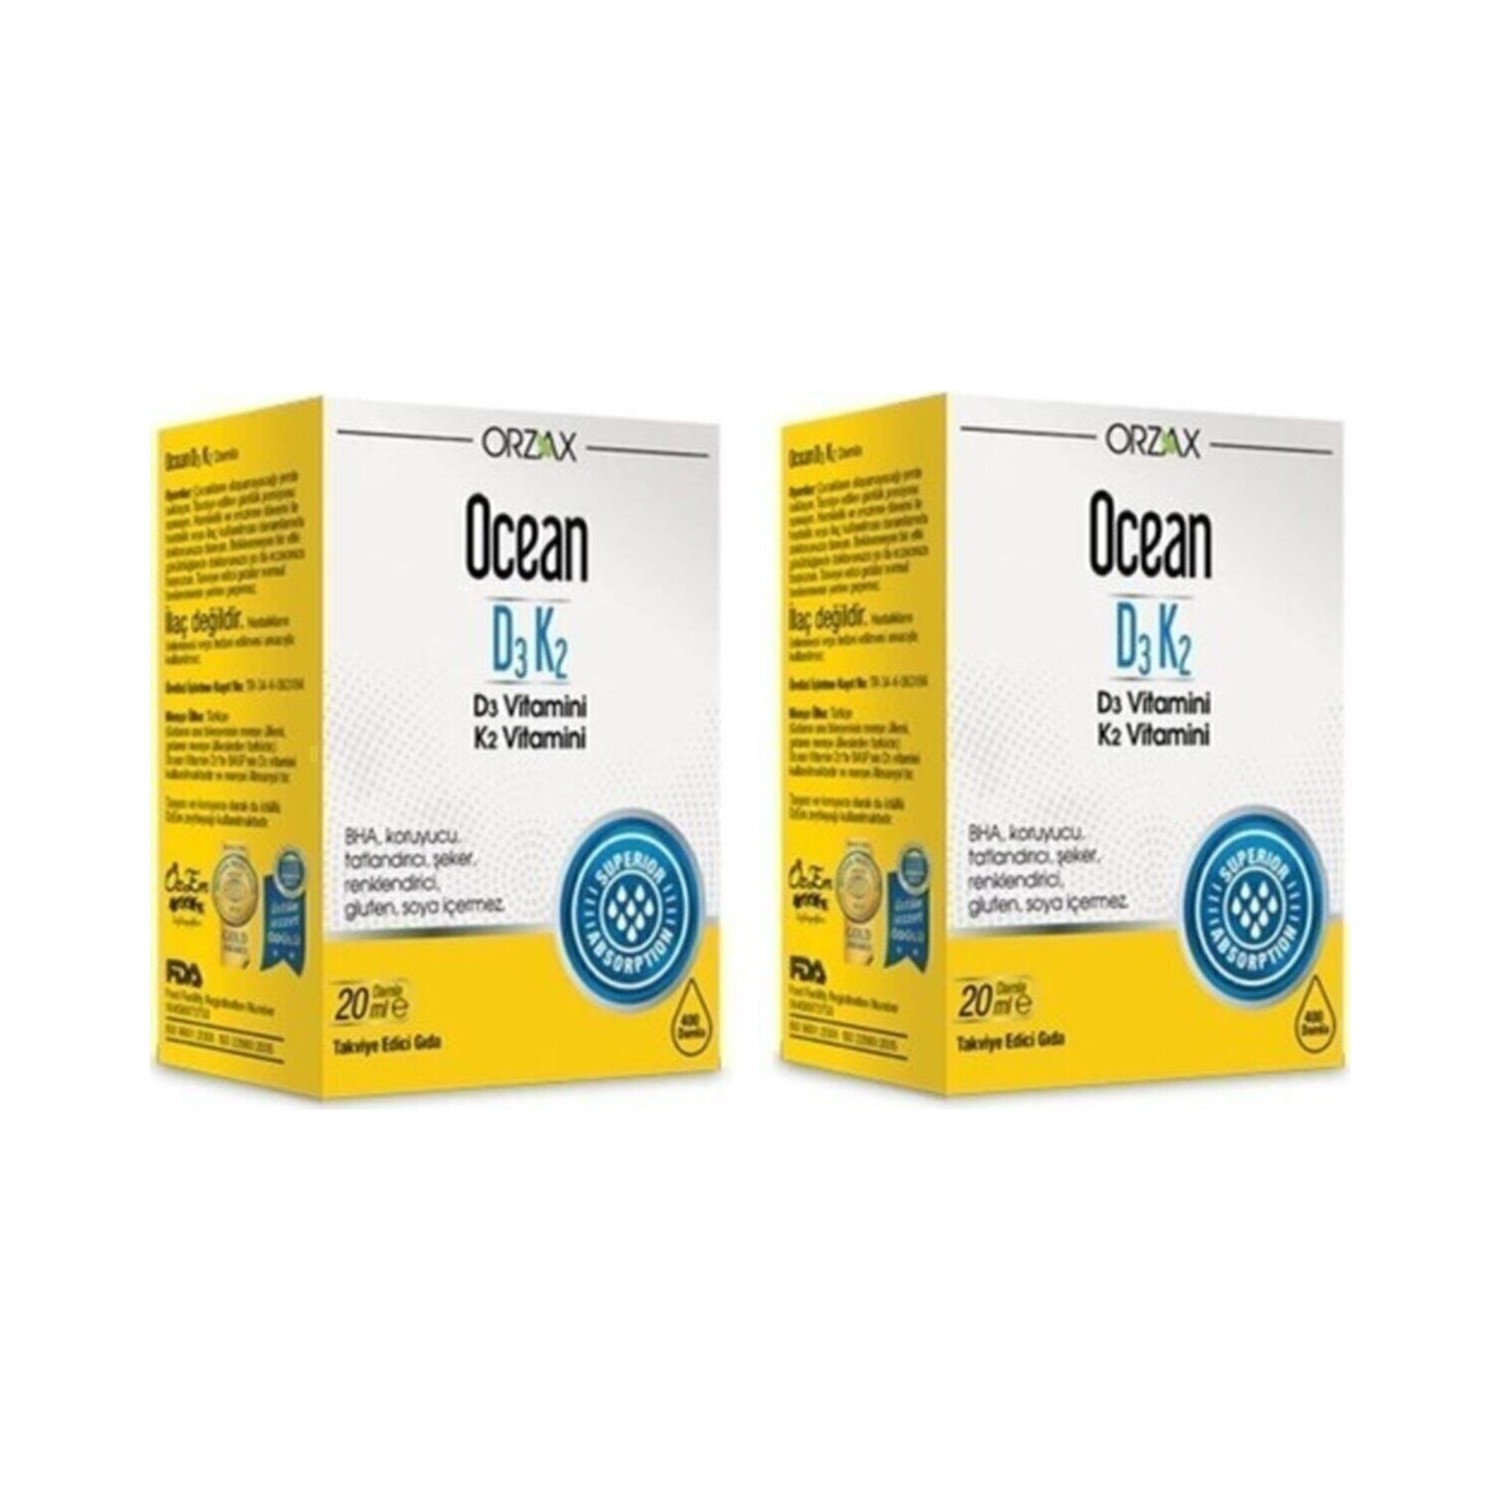 витаминные капли orzax ocean d3 k2 4 флакона по 20 мл Витаминные капли D3 / K2 Orzax Ocean, 2 флакона по 20 мл